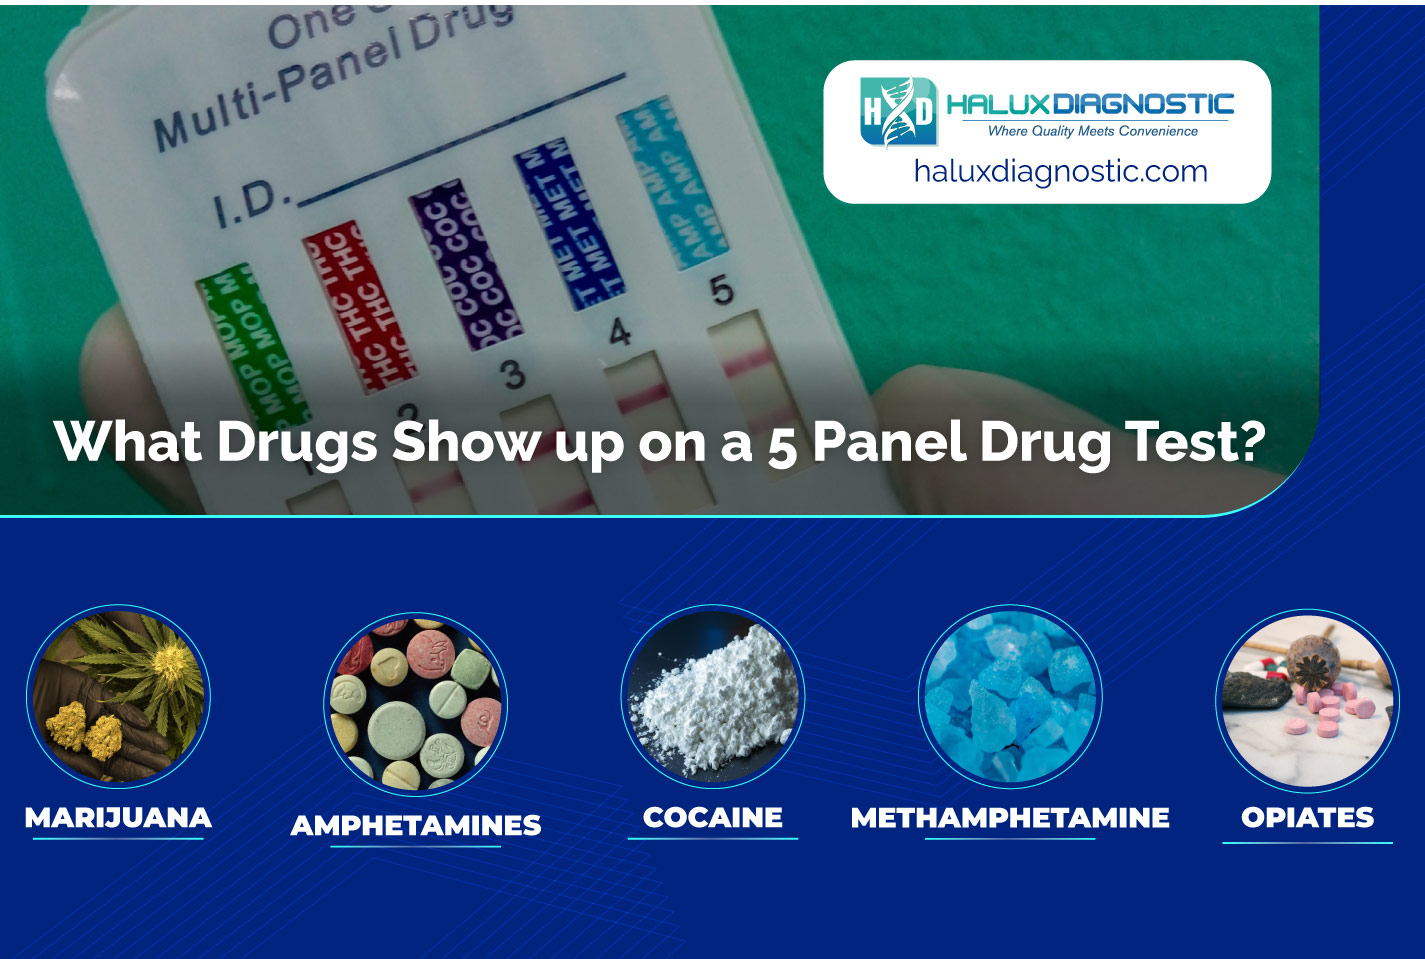 5 panel drug tests